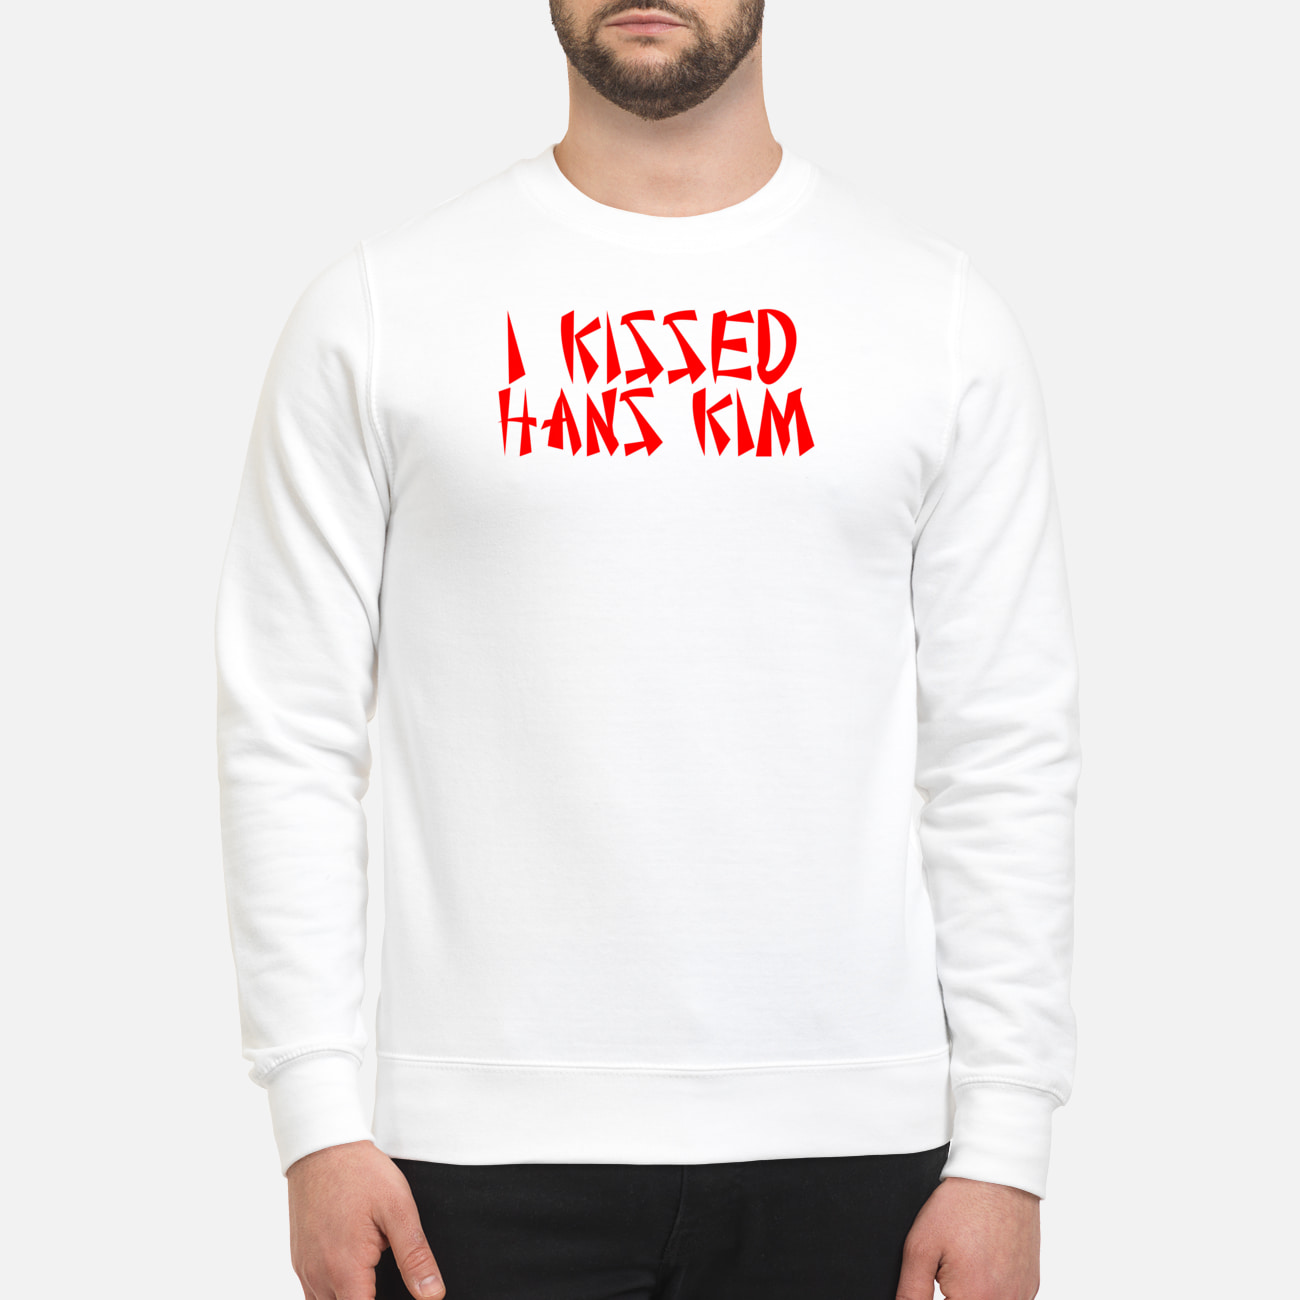 I Kissed Hans Kim Shirt